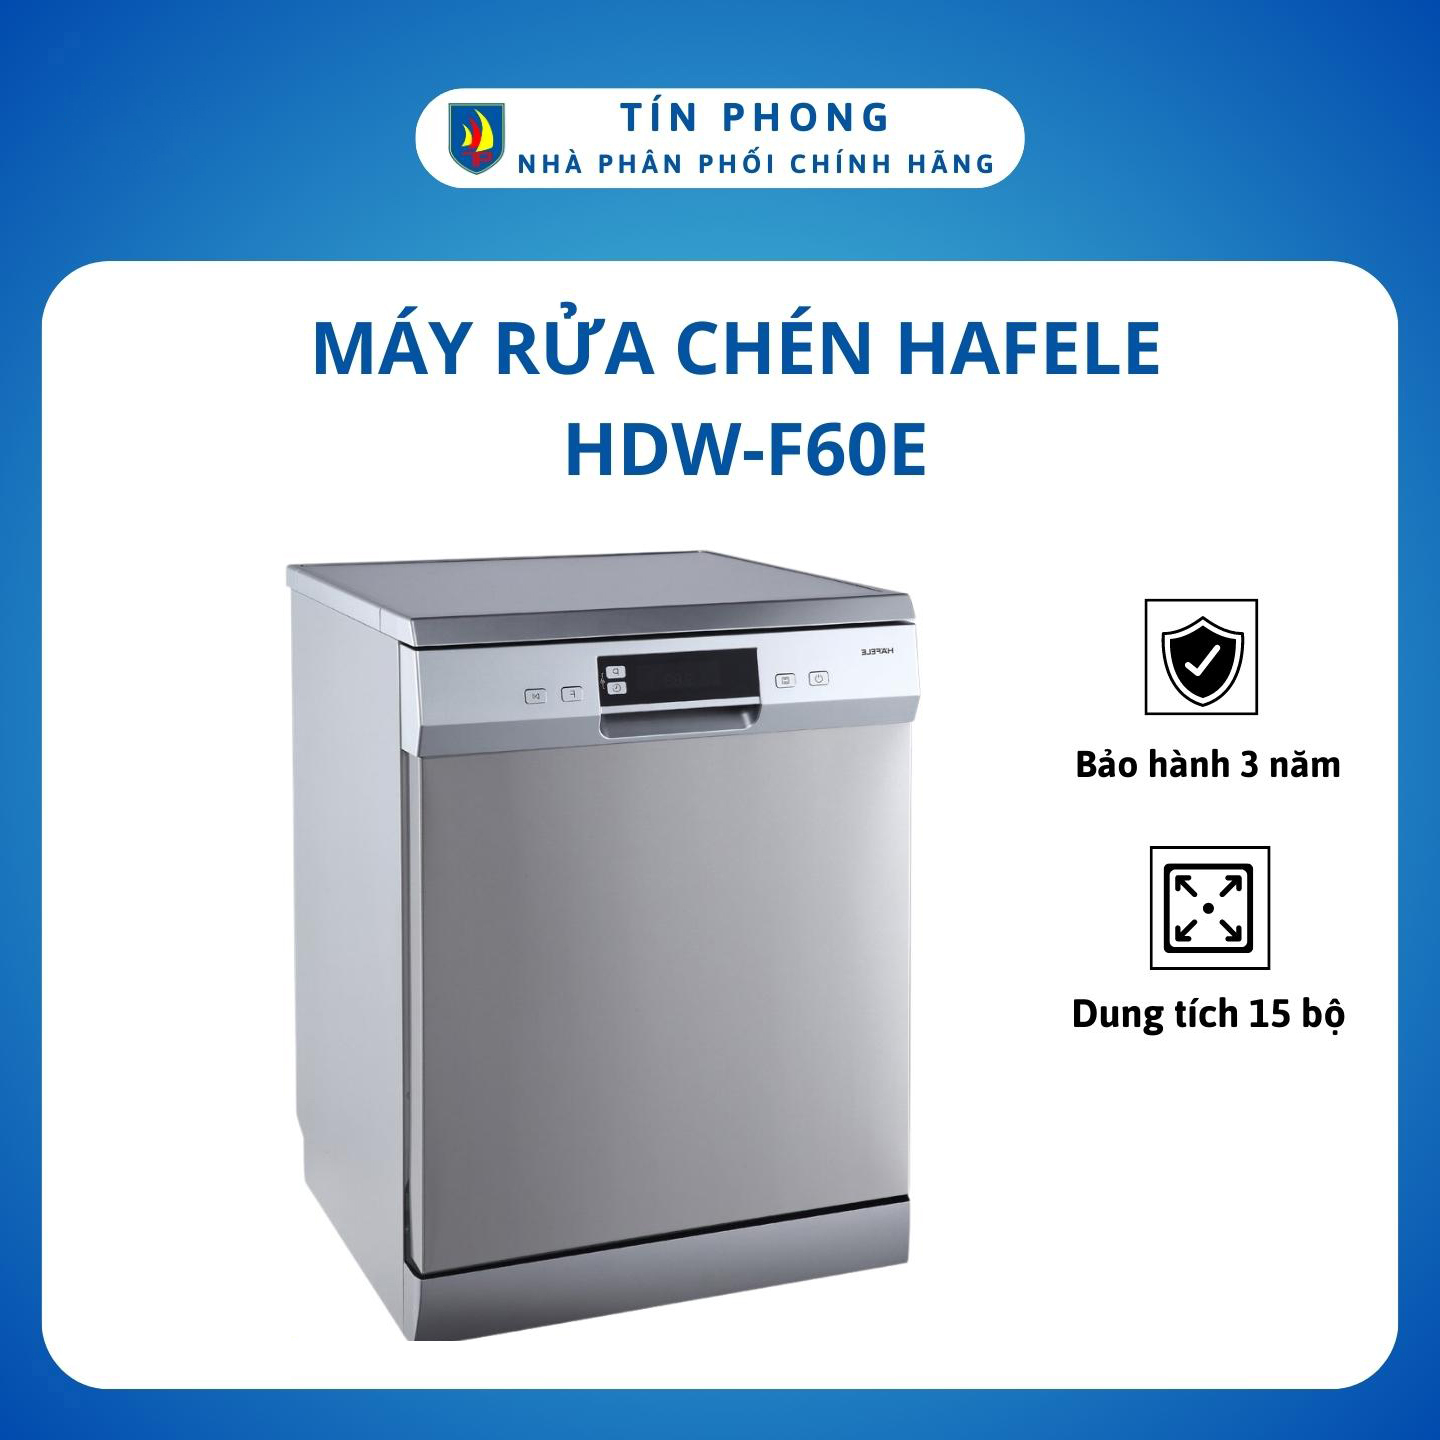 Máy Rửa Chén Hafele HDW-F60E 538.21.200 - Hàng Chính Hãng